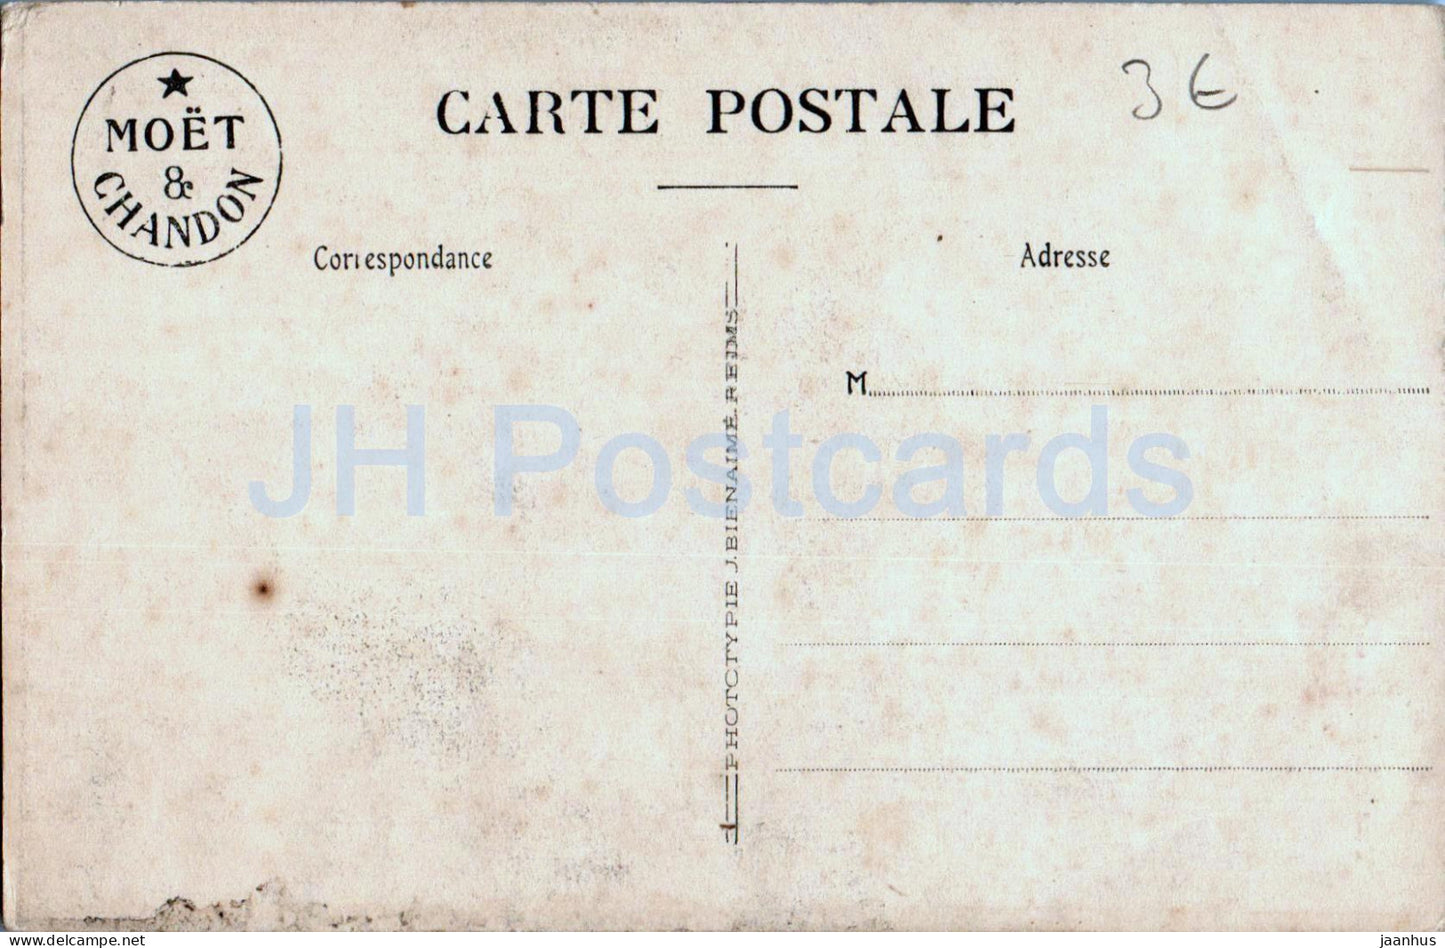 Vue Generale de l'Ancienne Abbaye d'Hautvillers - Maison - Moet et Chandon - old postcard - France - unused